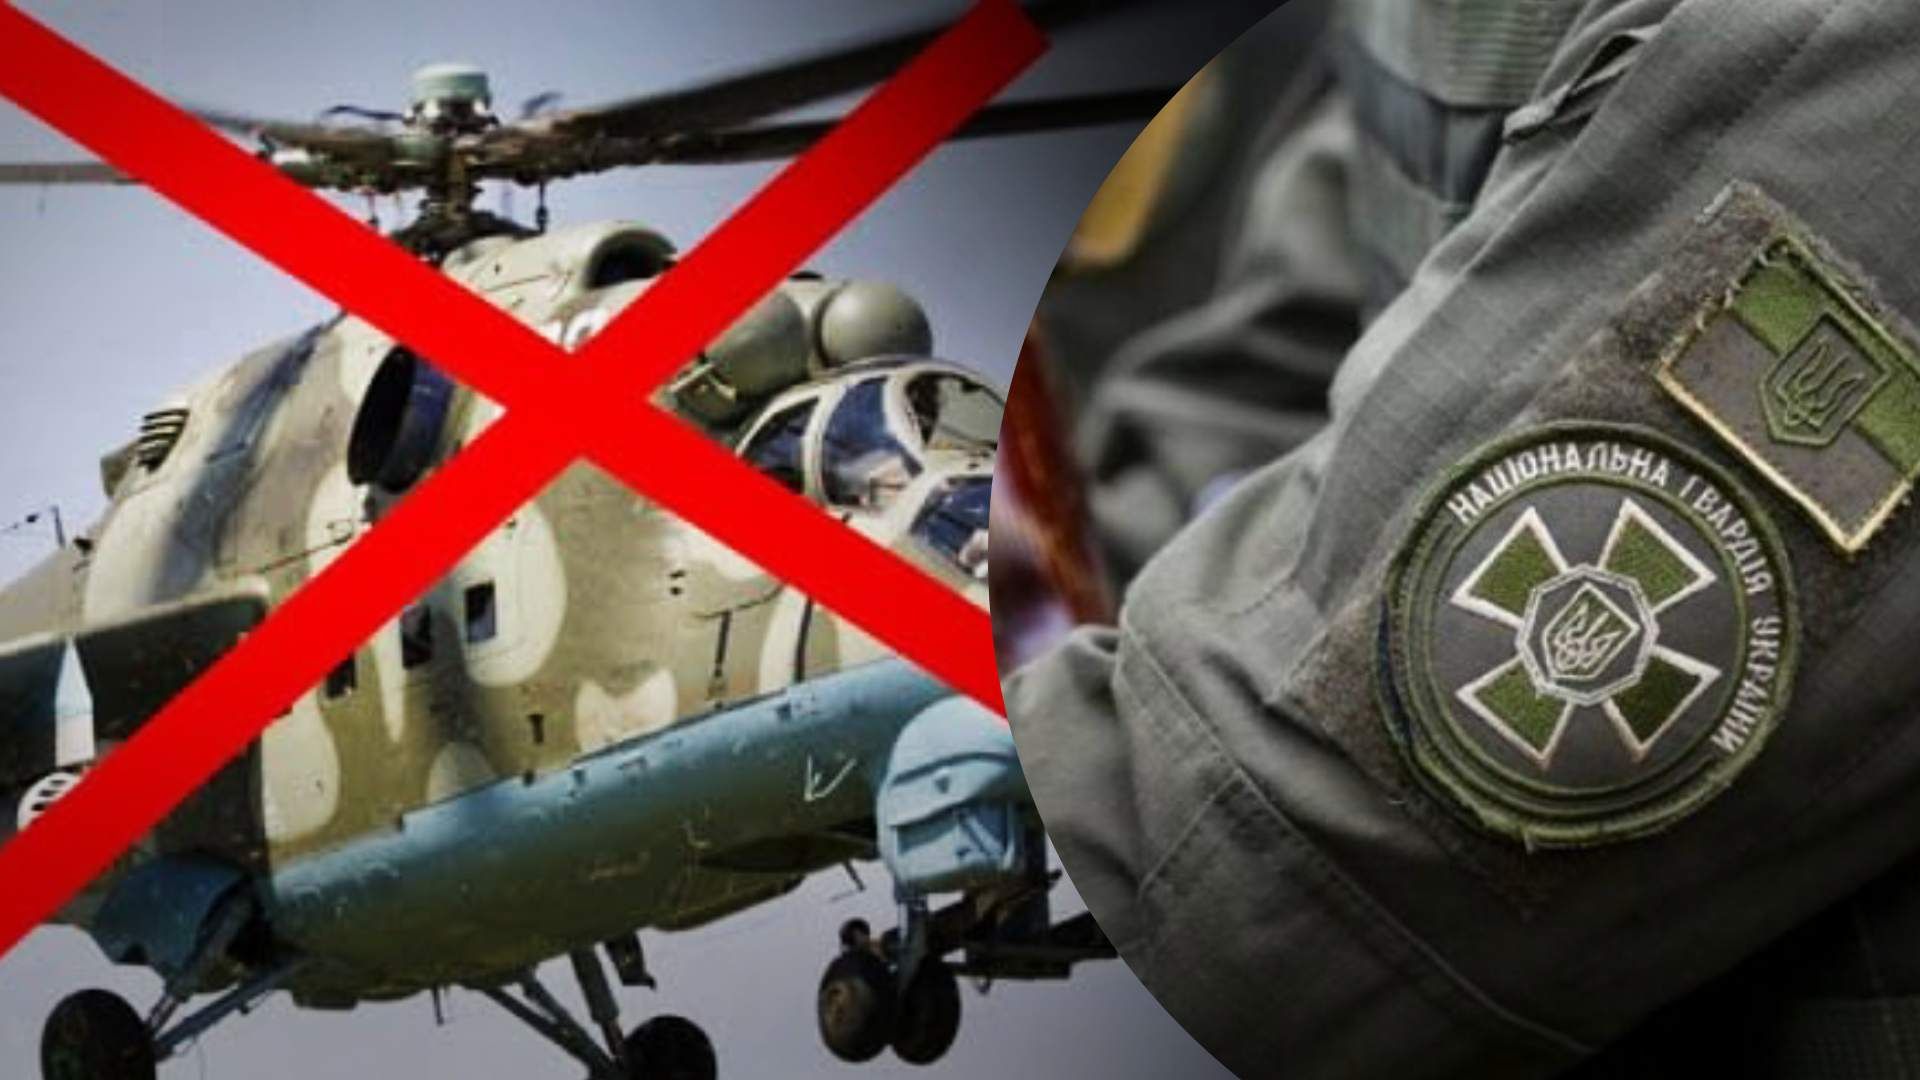 Нацгвардейцы уничтожили российский вертолет Ми-24